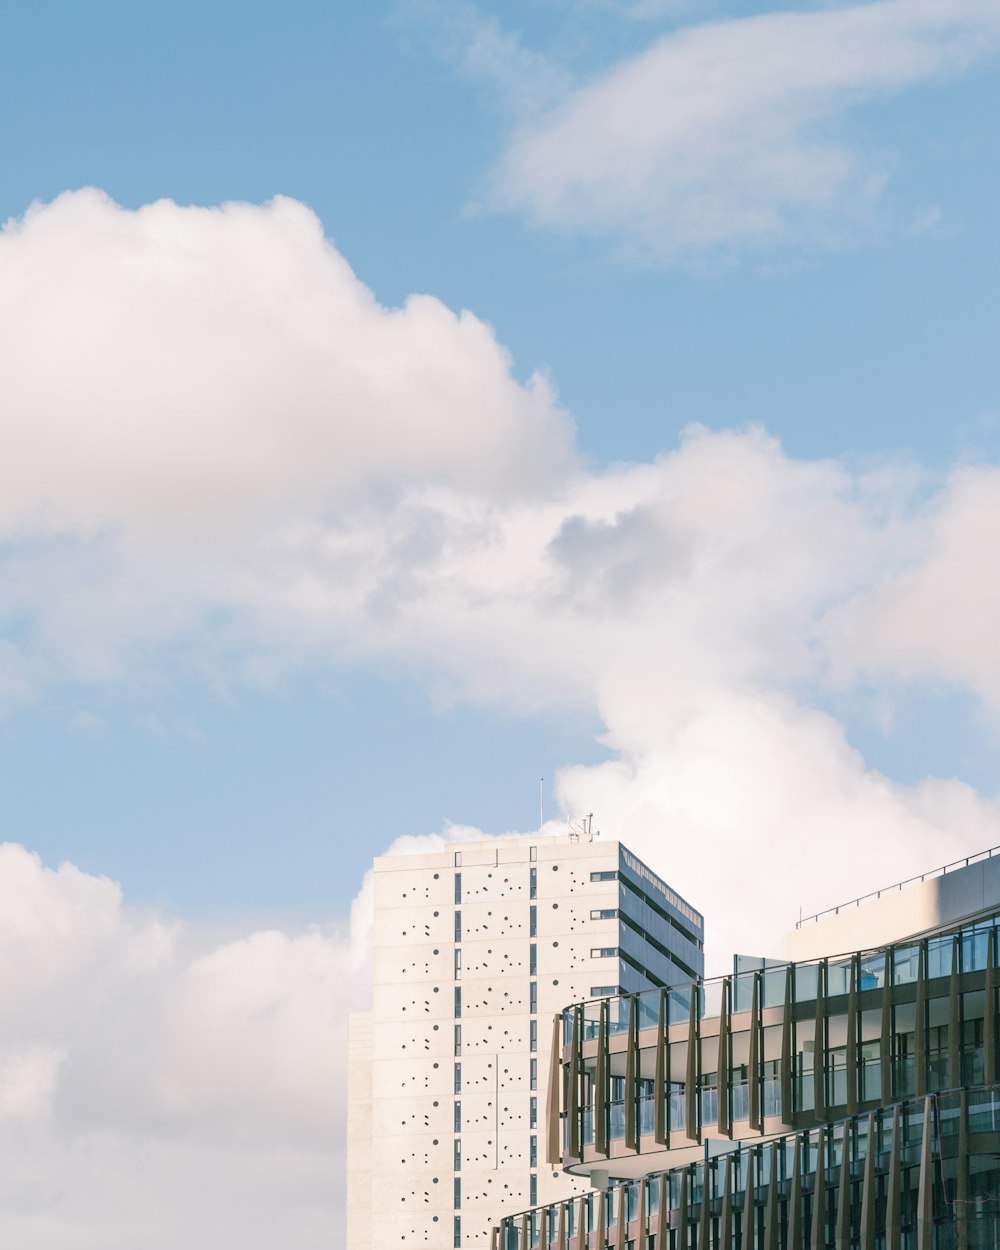 edifício de concreto branco e marrom sob o céu azul durante o dia